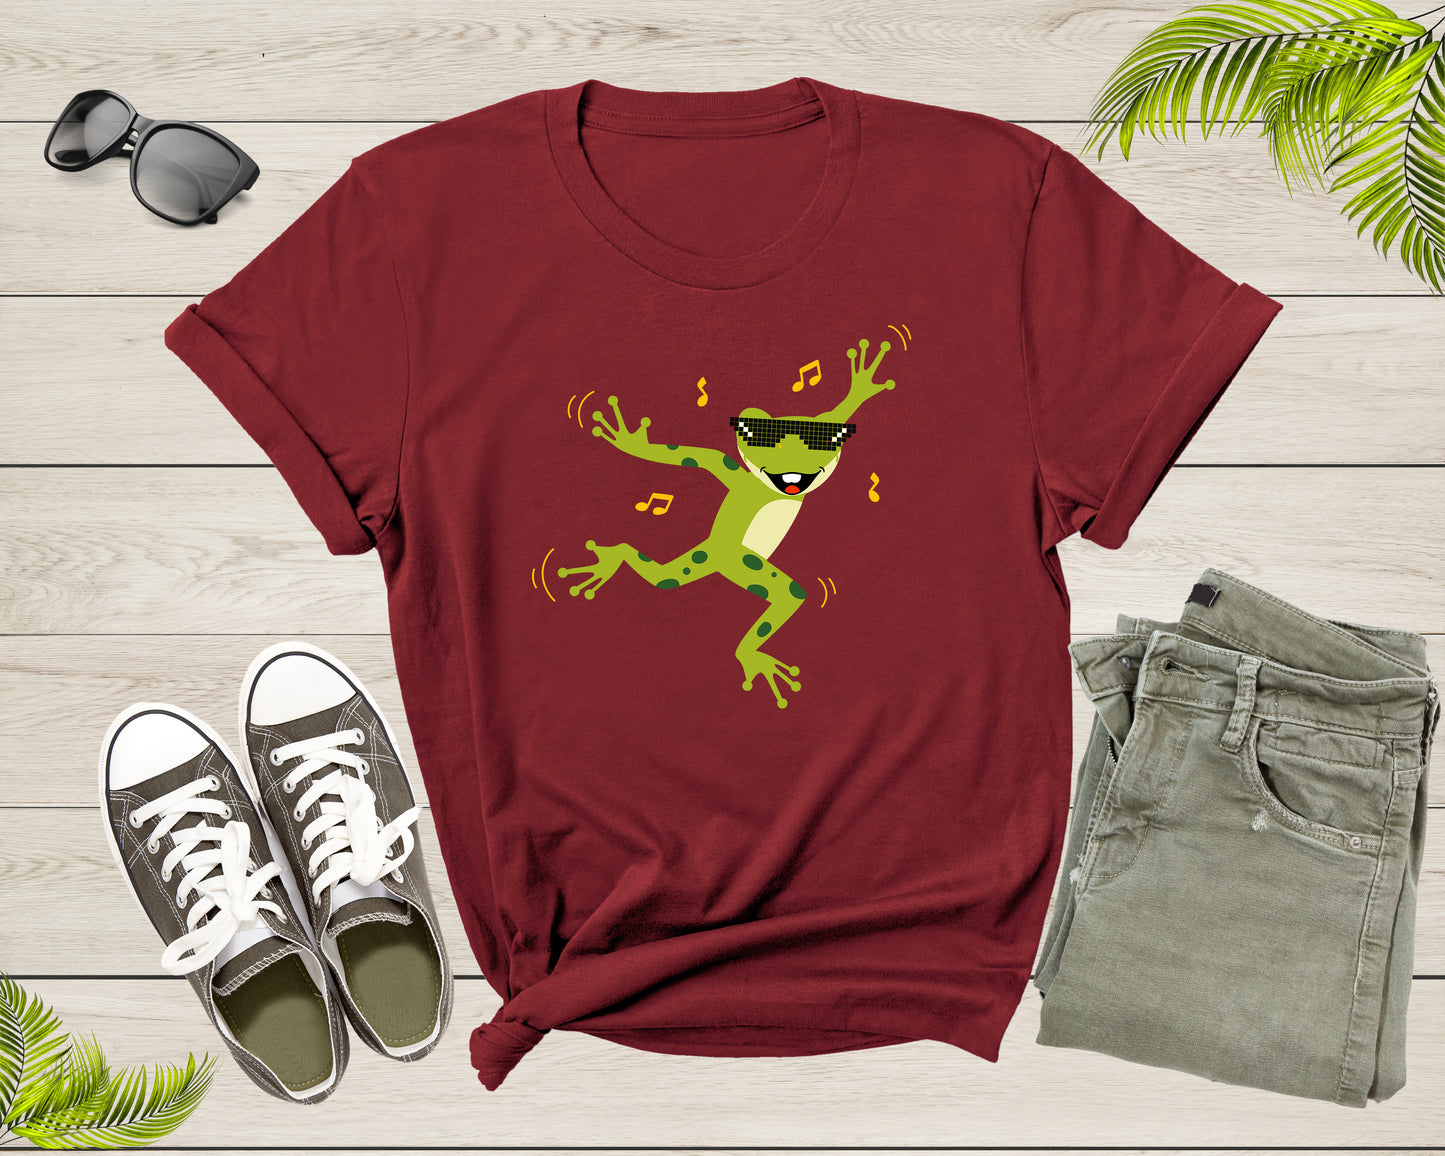 Funny Cute Green Dancing Frog Toad Cartoon for Women Men T-Shirt Frog Lover Gift T Shirt for Men Women Kids Boys Girls Graphic Tshirt